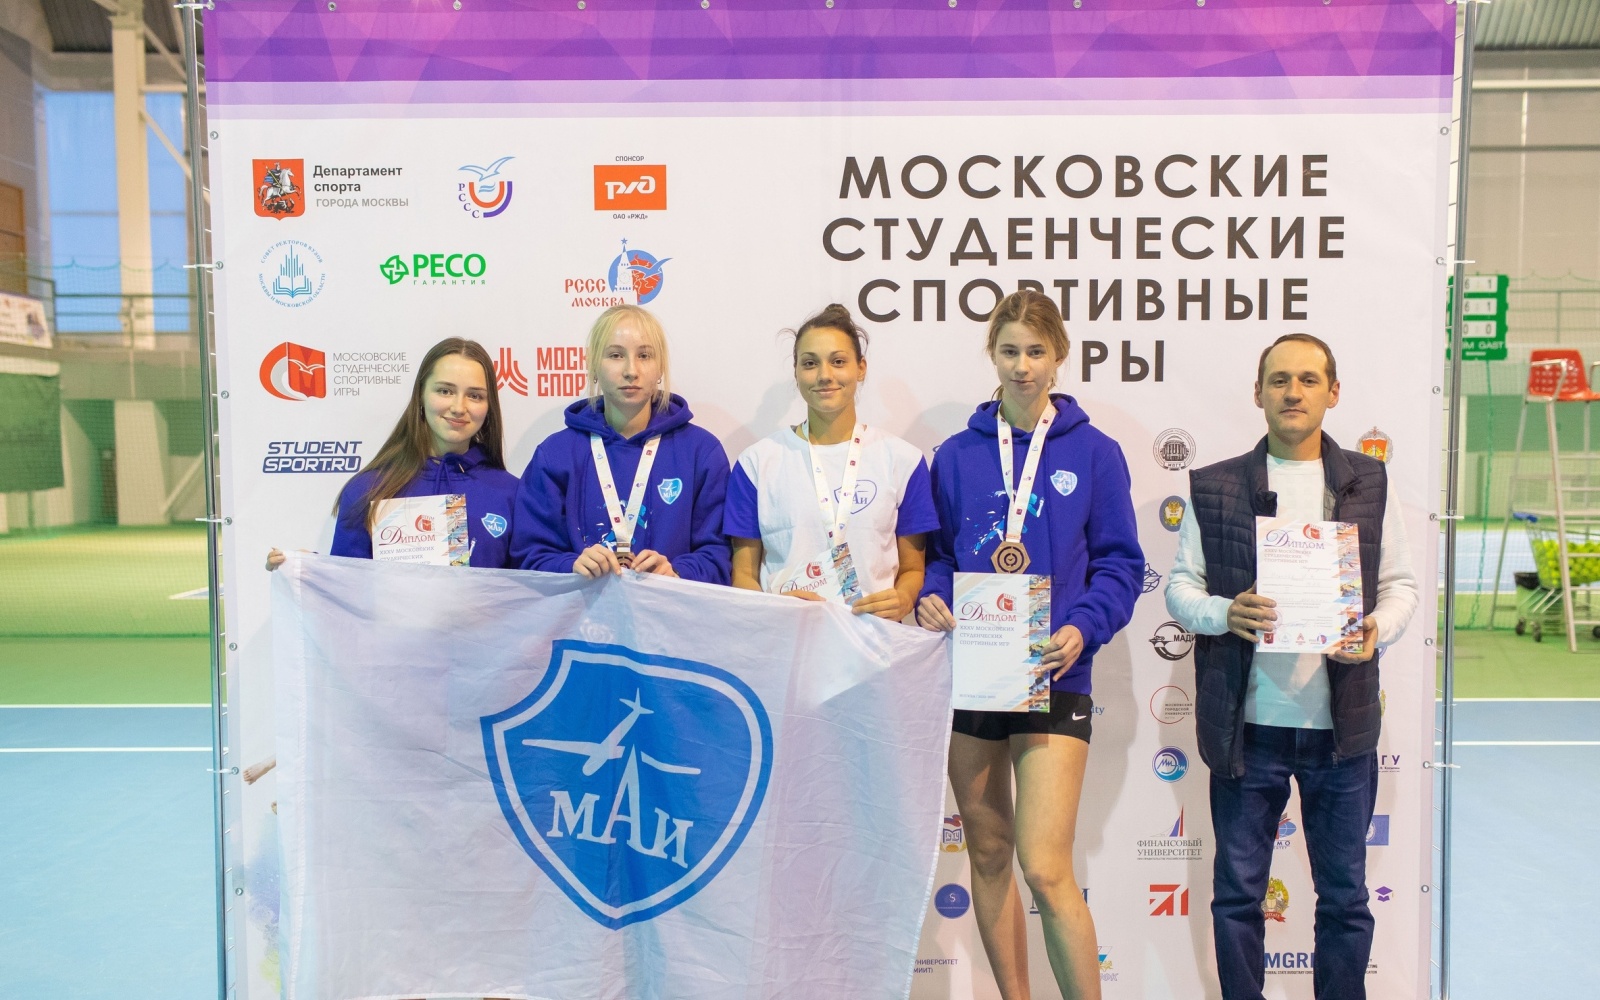 Женская сборная МАИ — призёр Московских студенческих спортивных игр по теннису